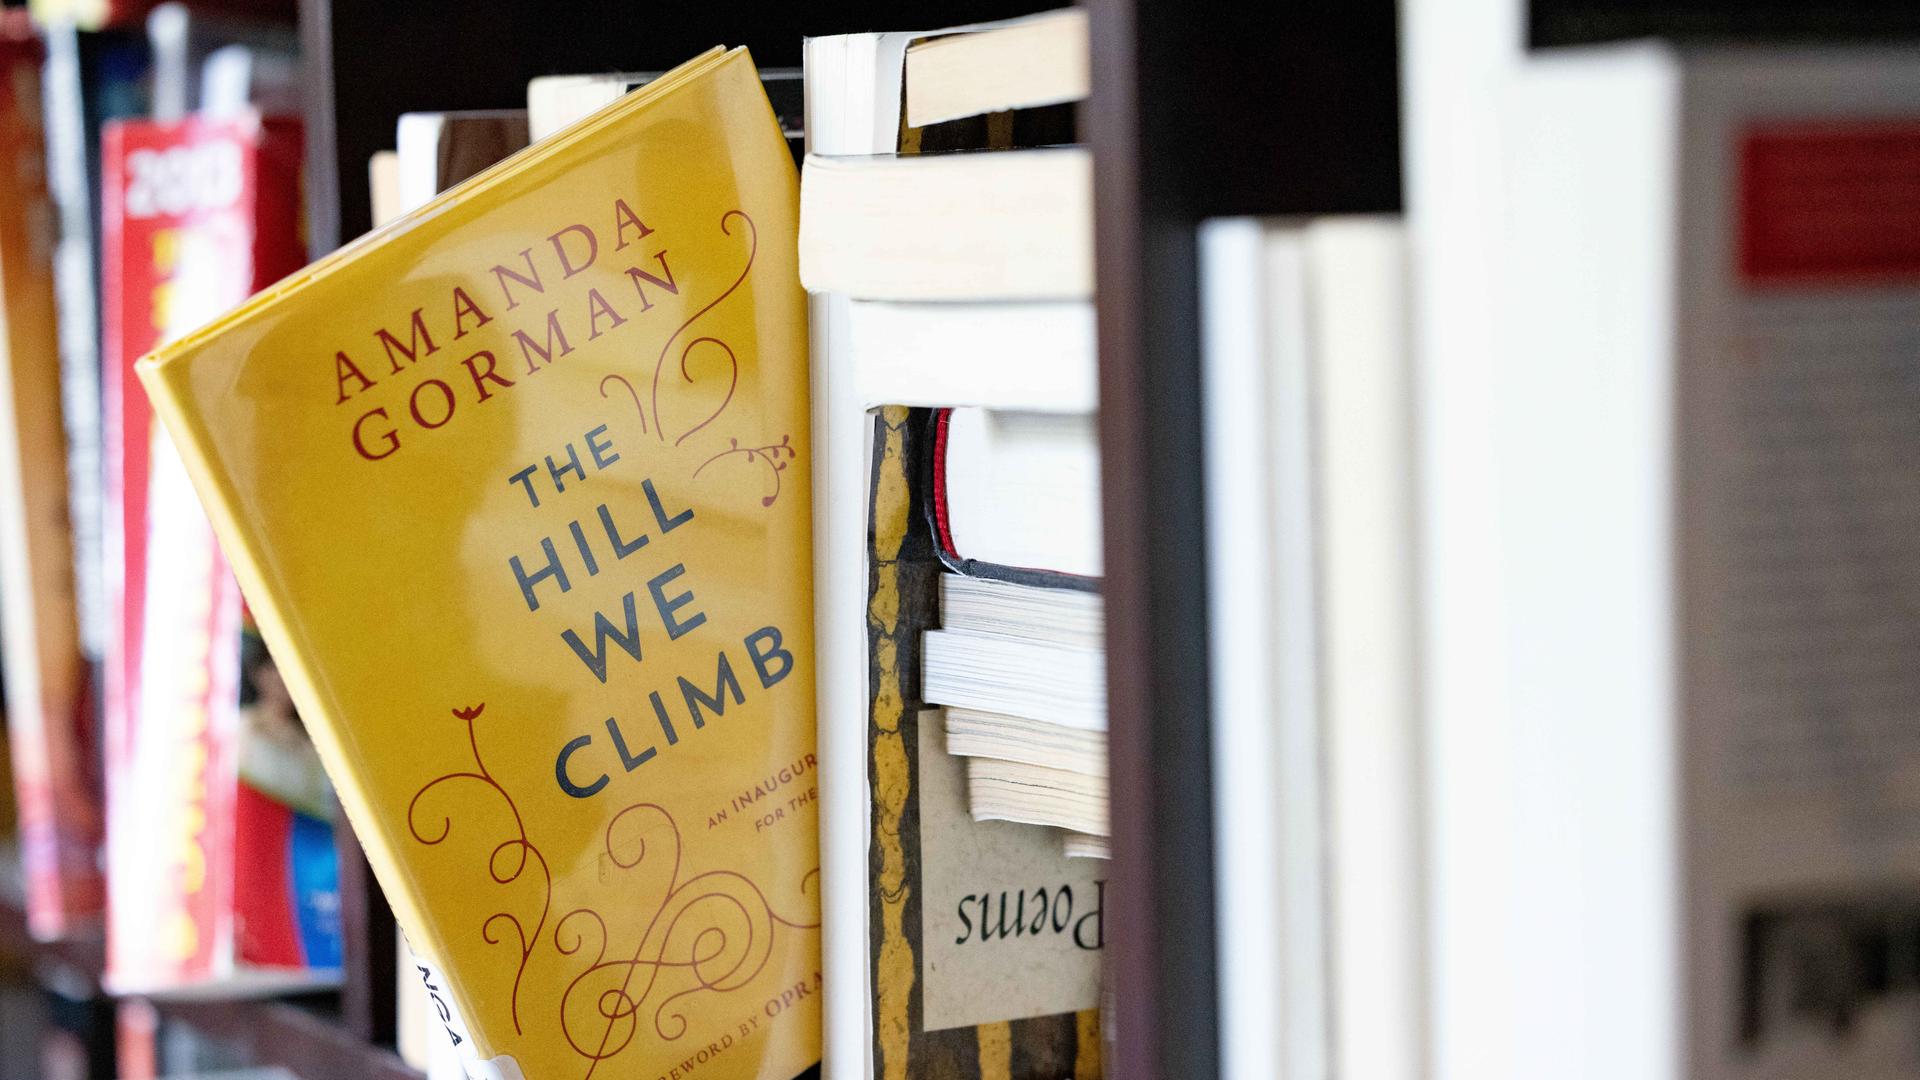 Ein gelbes Buch mit dem englischen  Titel "The hill we climb" scheint fast aus einem Bücherregal herauszufallen